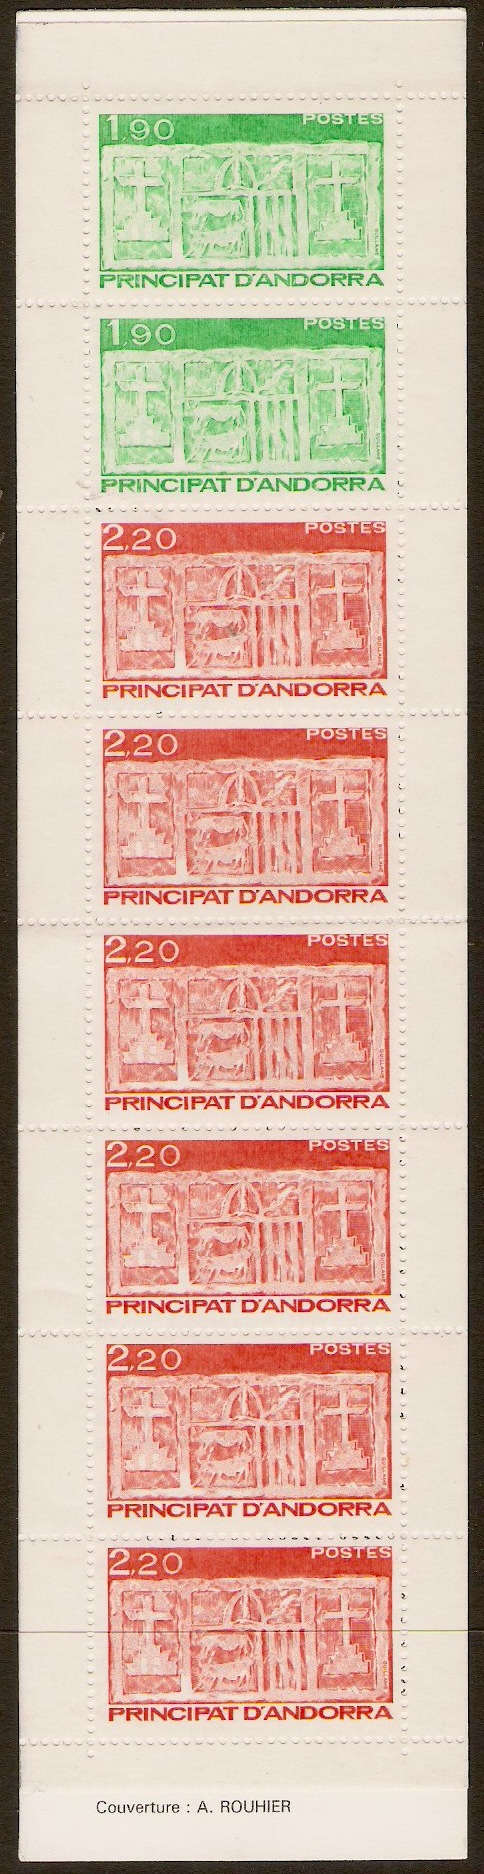 Andorra 1983 Stamp Booklet. SGSB1.